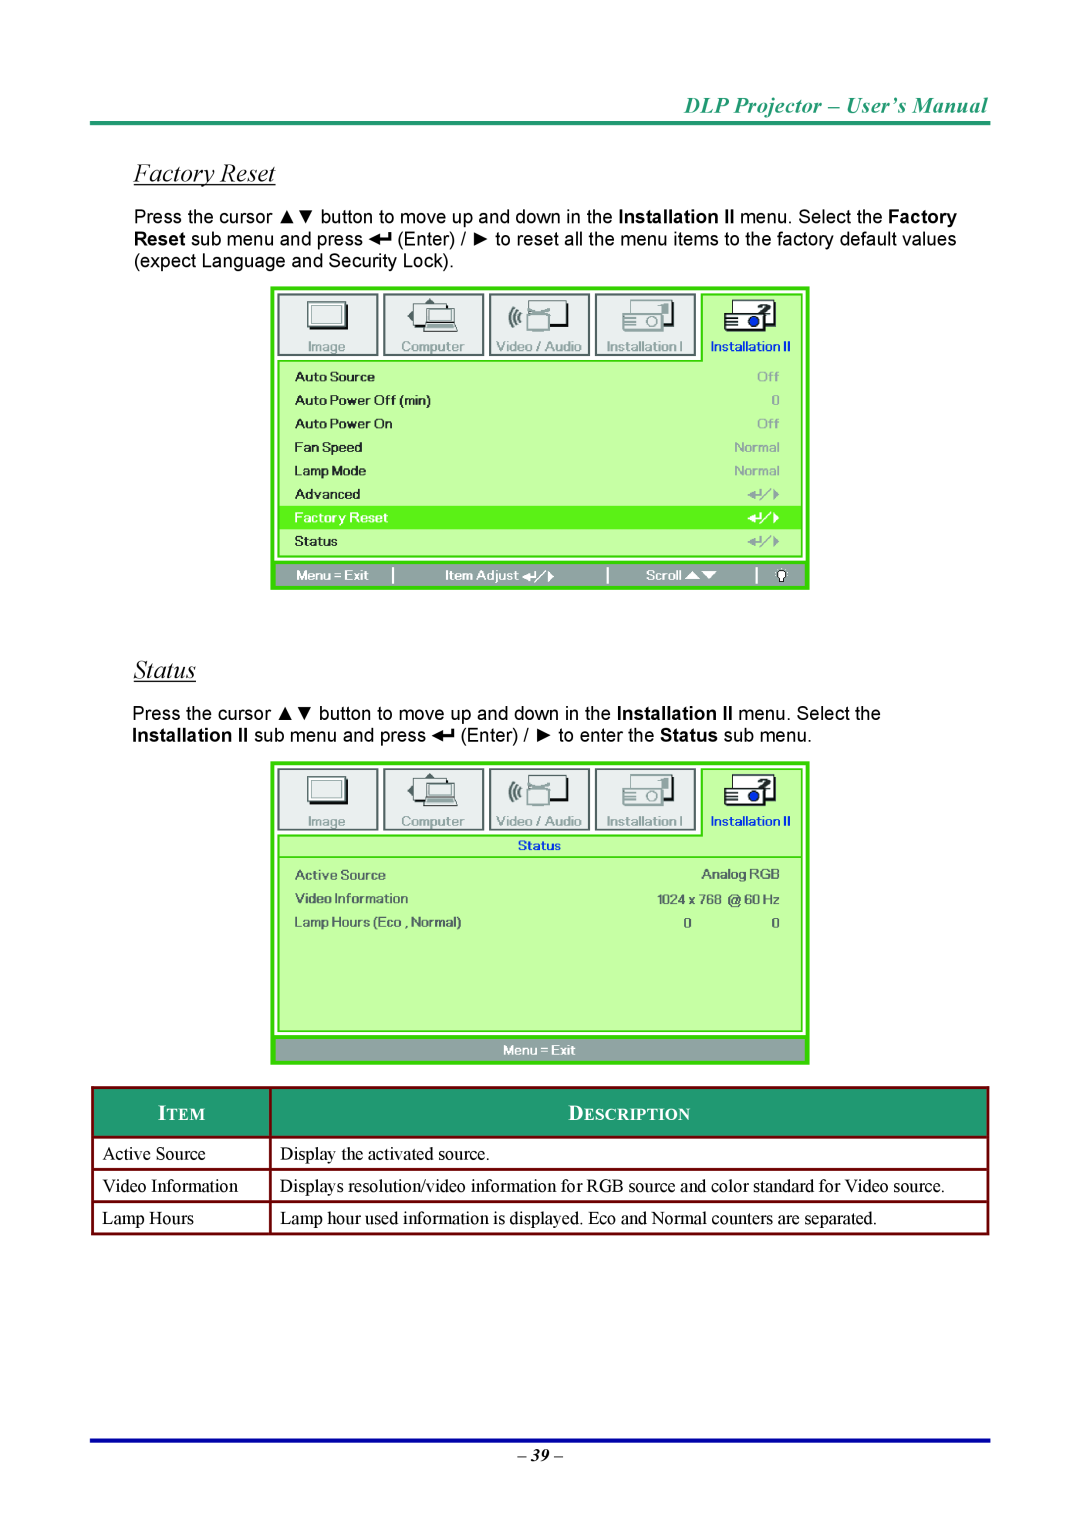 Vivitek D7 user manual Factory Reset, Status, DLP Projector - User’s Manual 